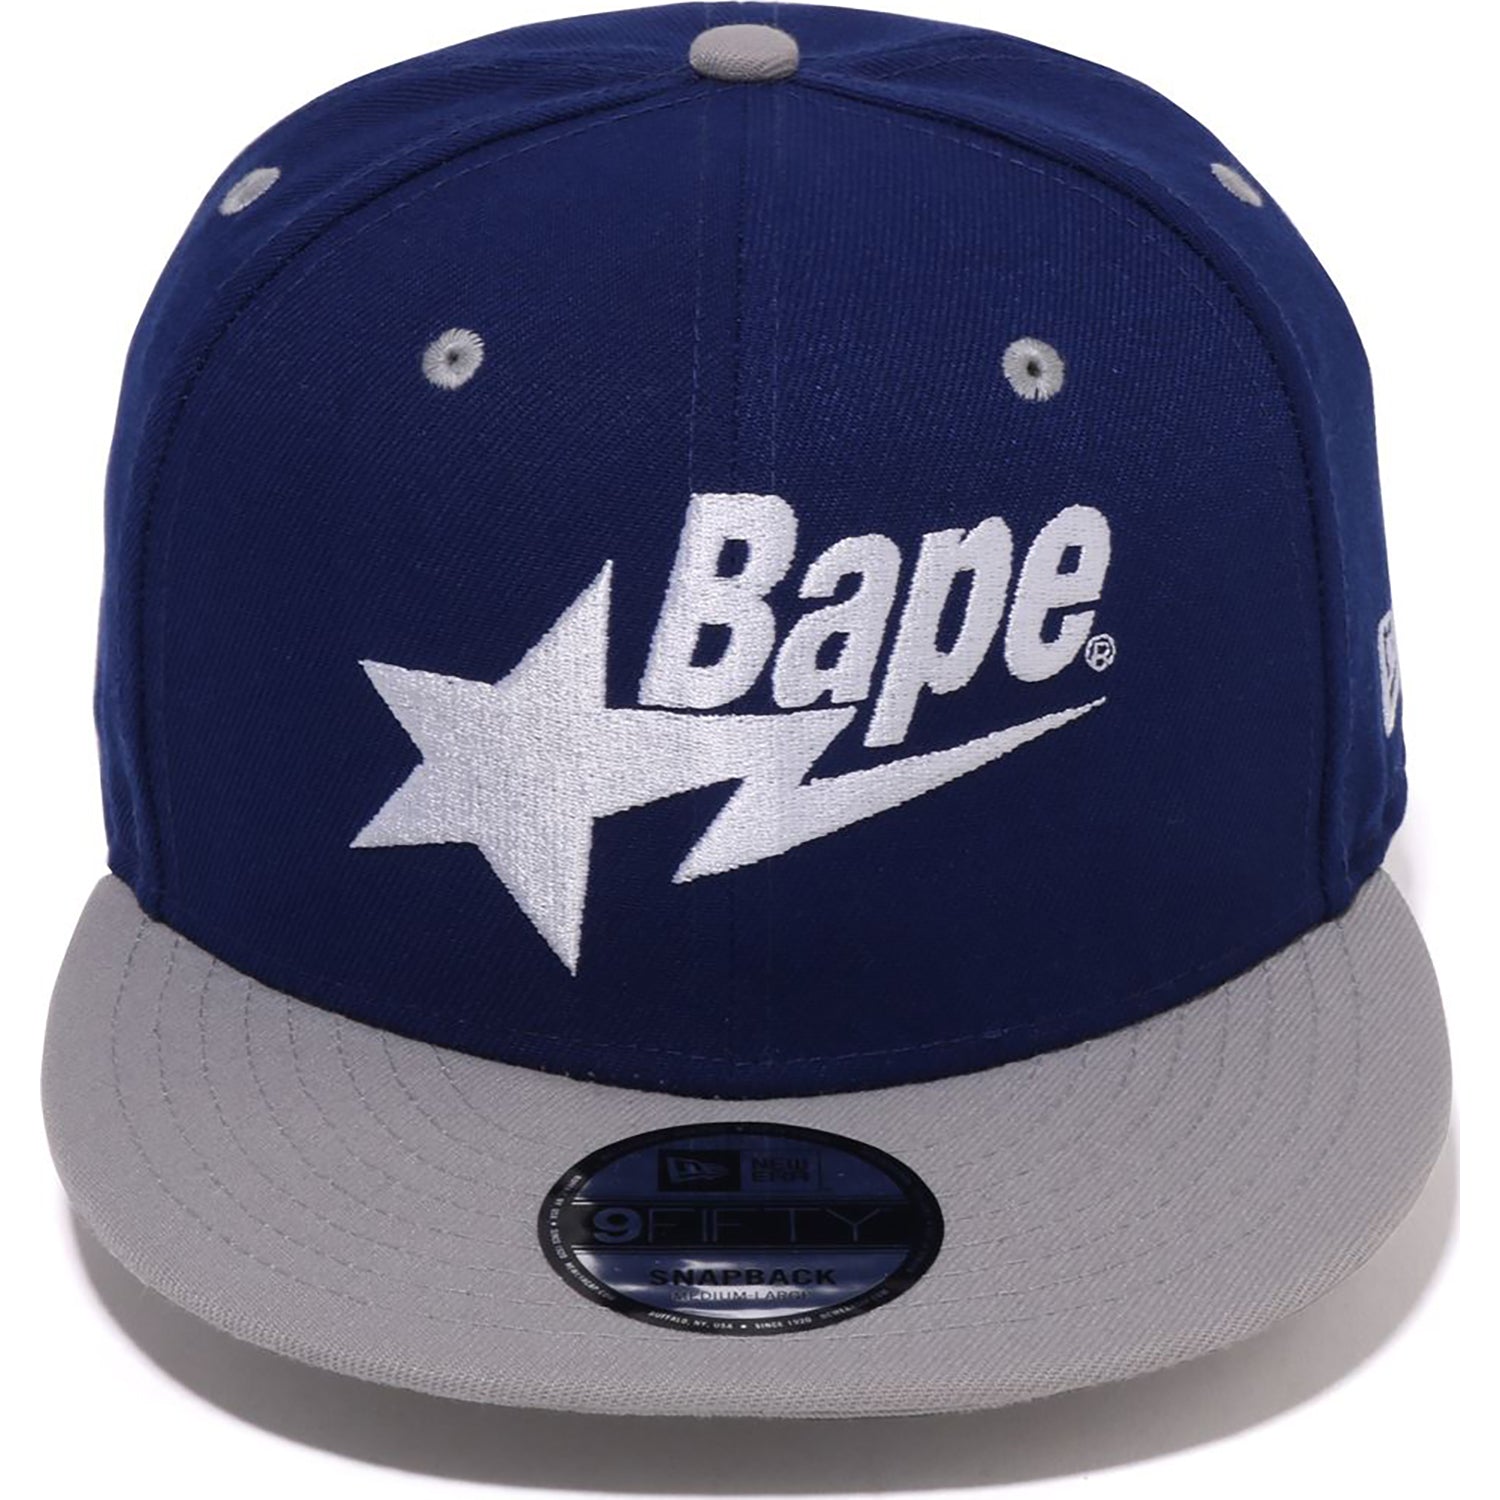 日本製特価BAPE×F.C.R.B. EMBLEM NEW ERA CAP キャップ